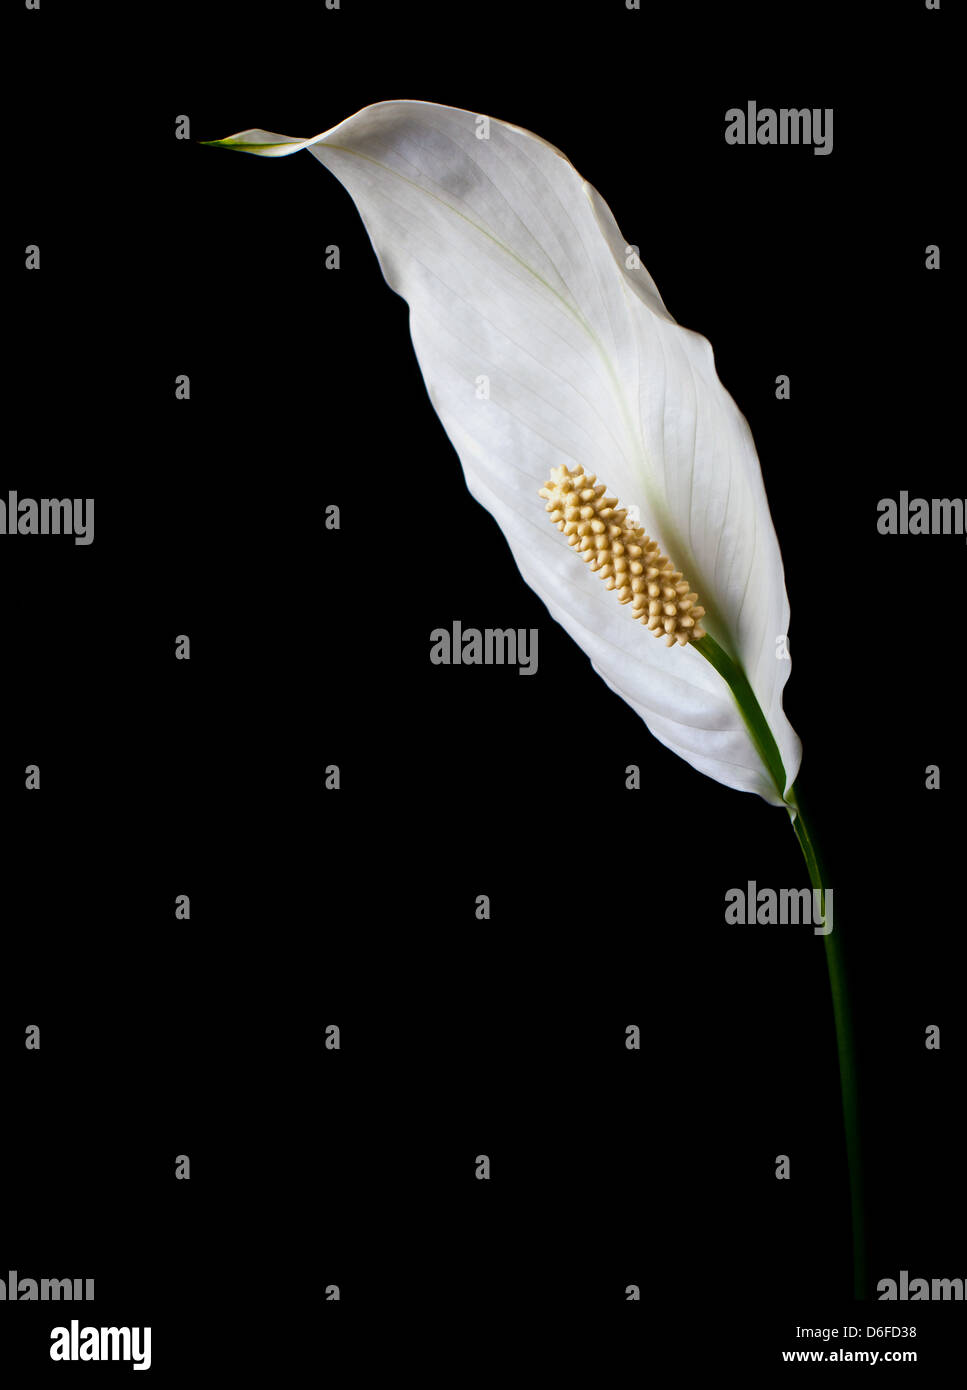 White flower still life Stock Photo